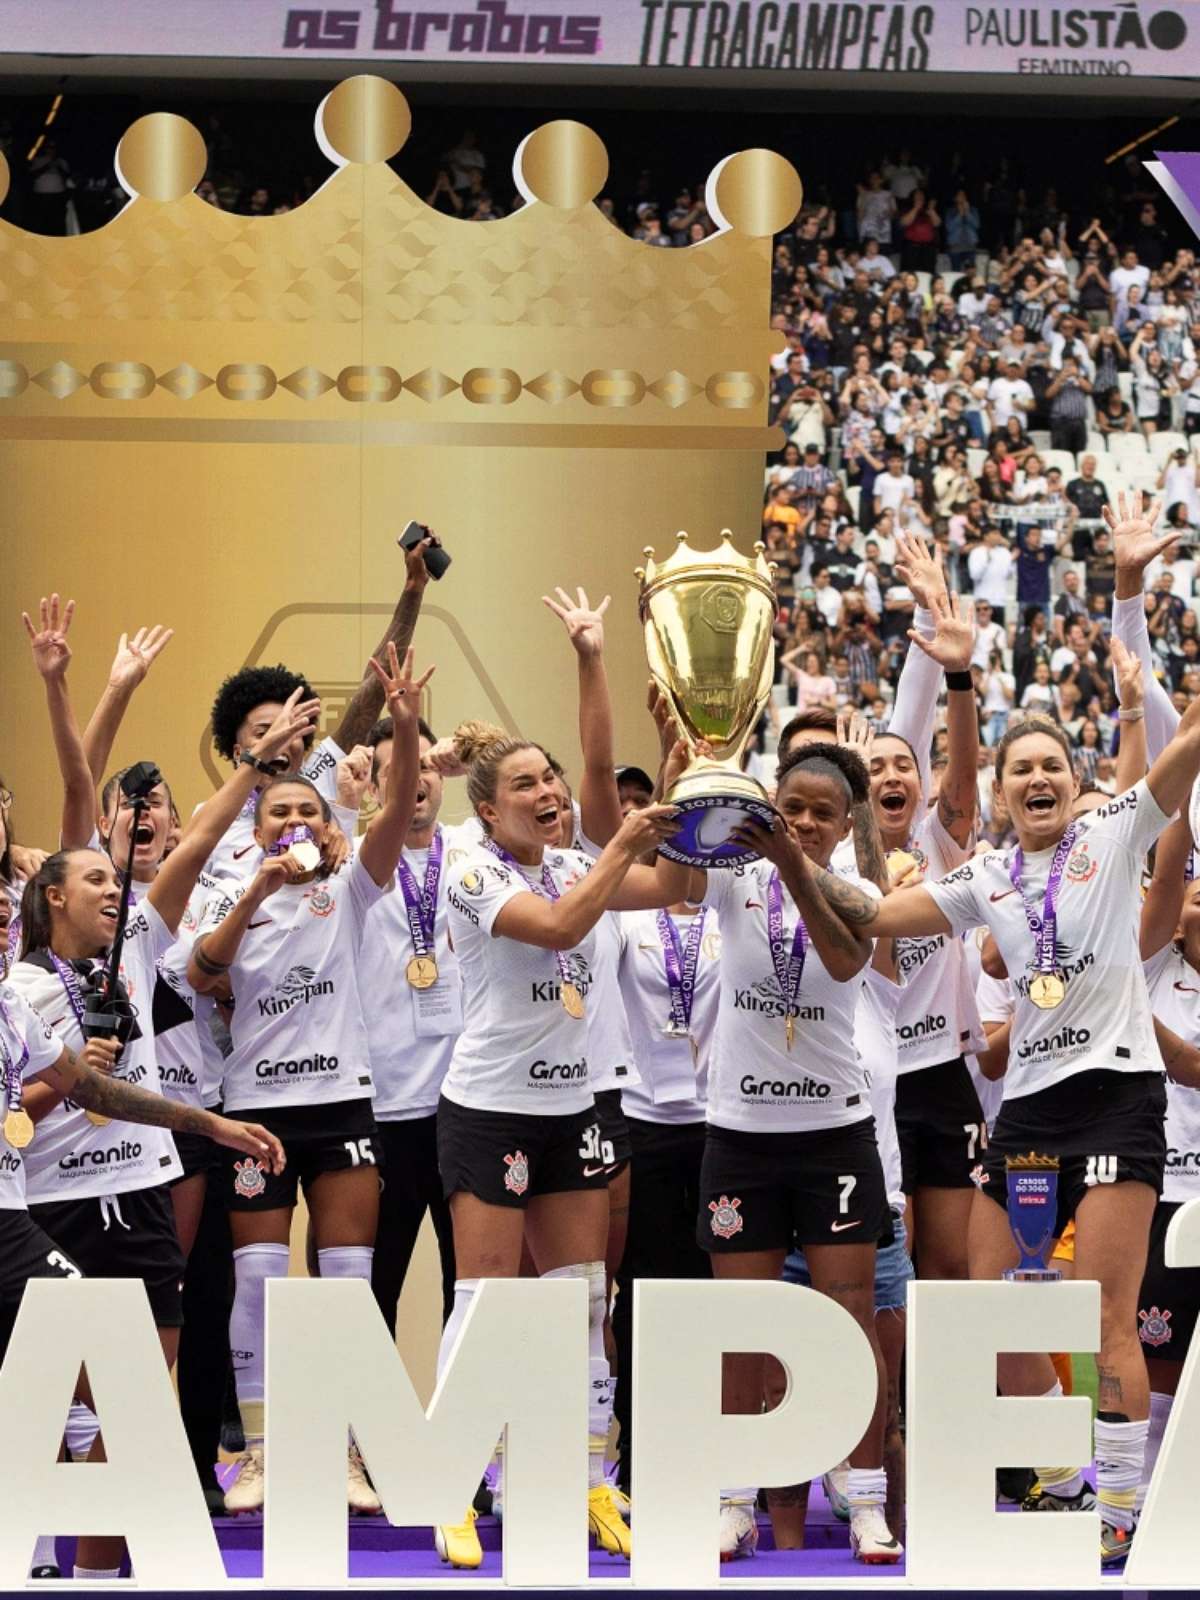 Corinthians é pentacampeão do Brasileirão Feminino - Jornal Joca